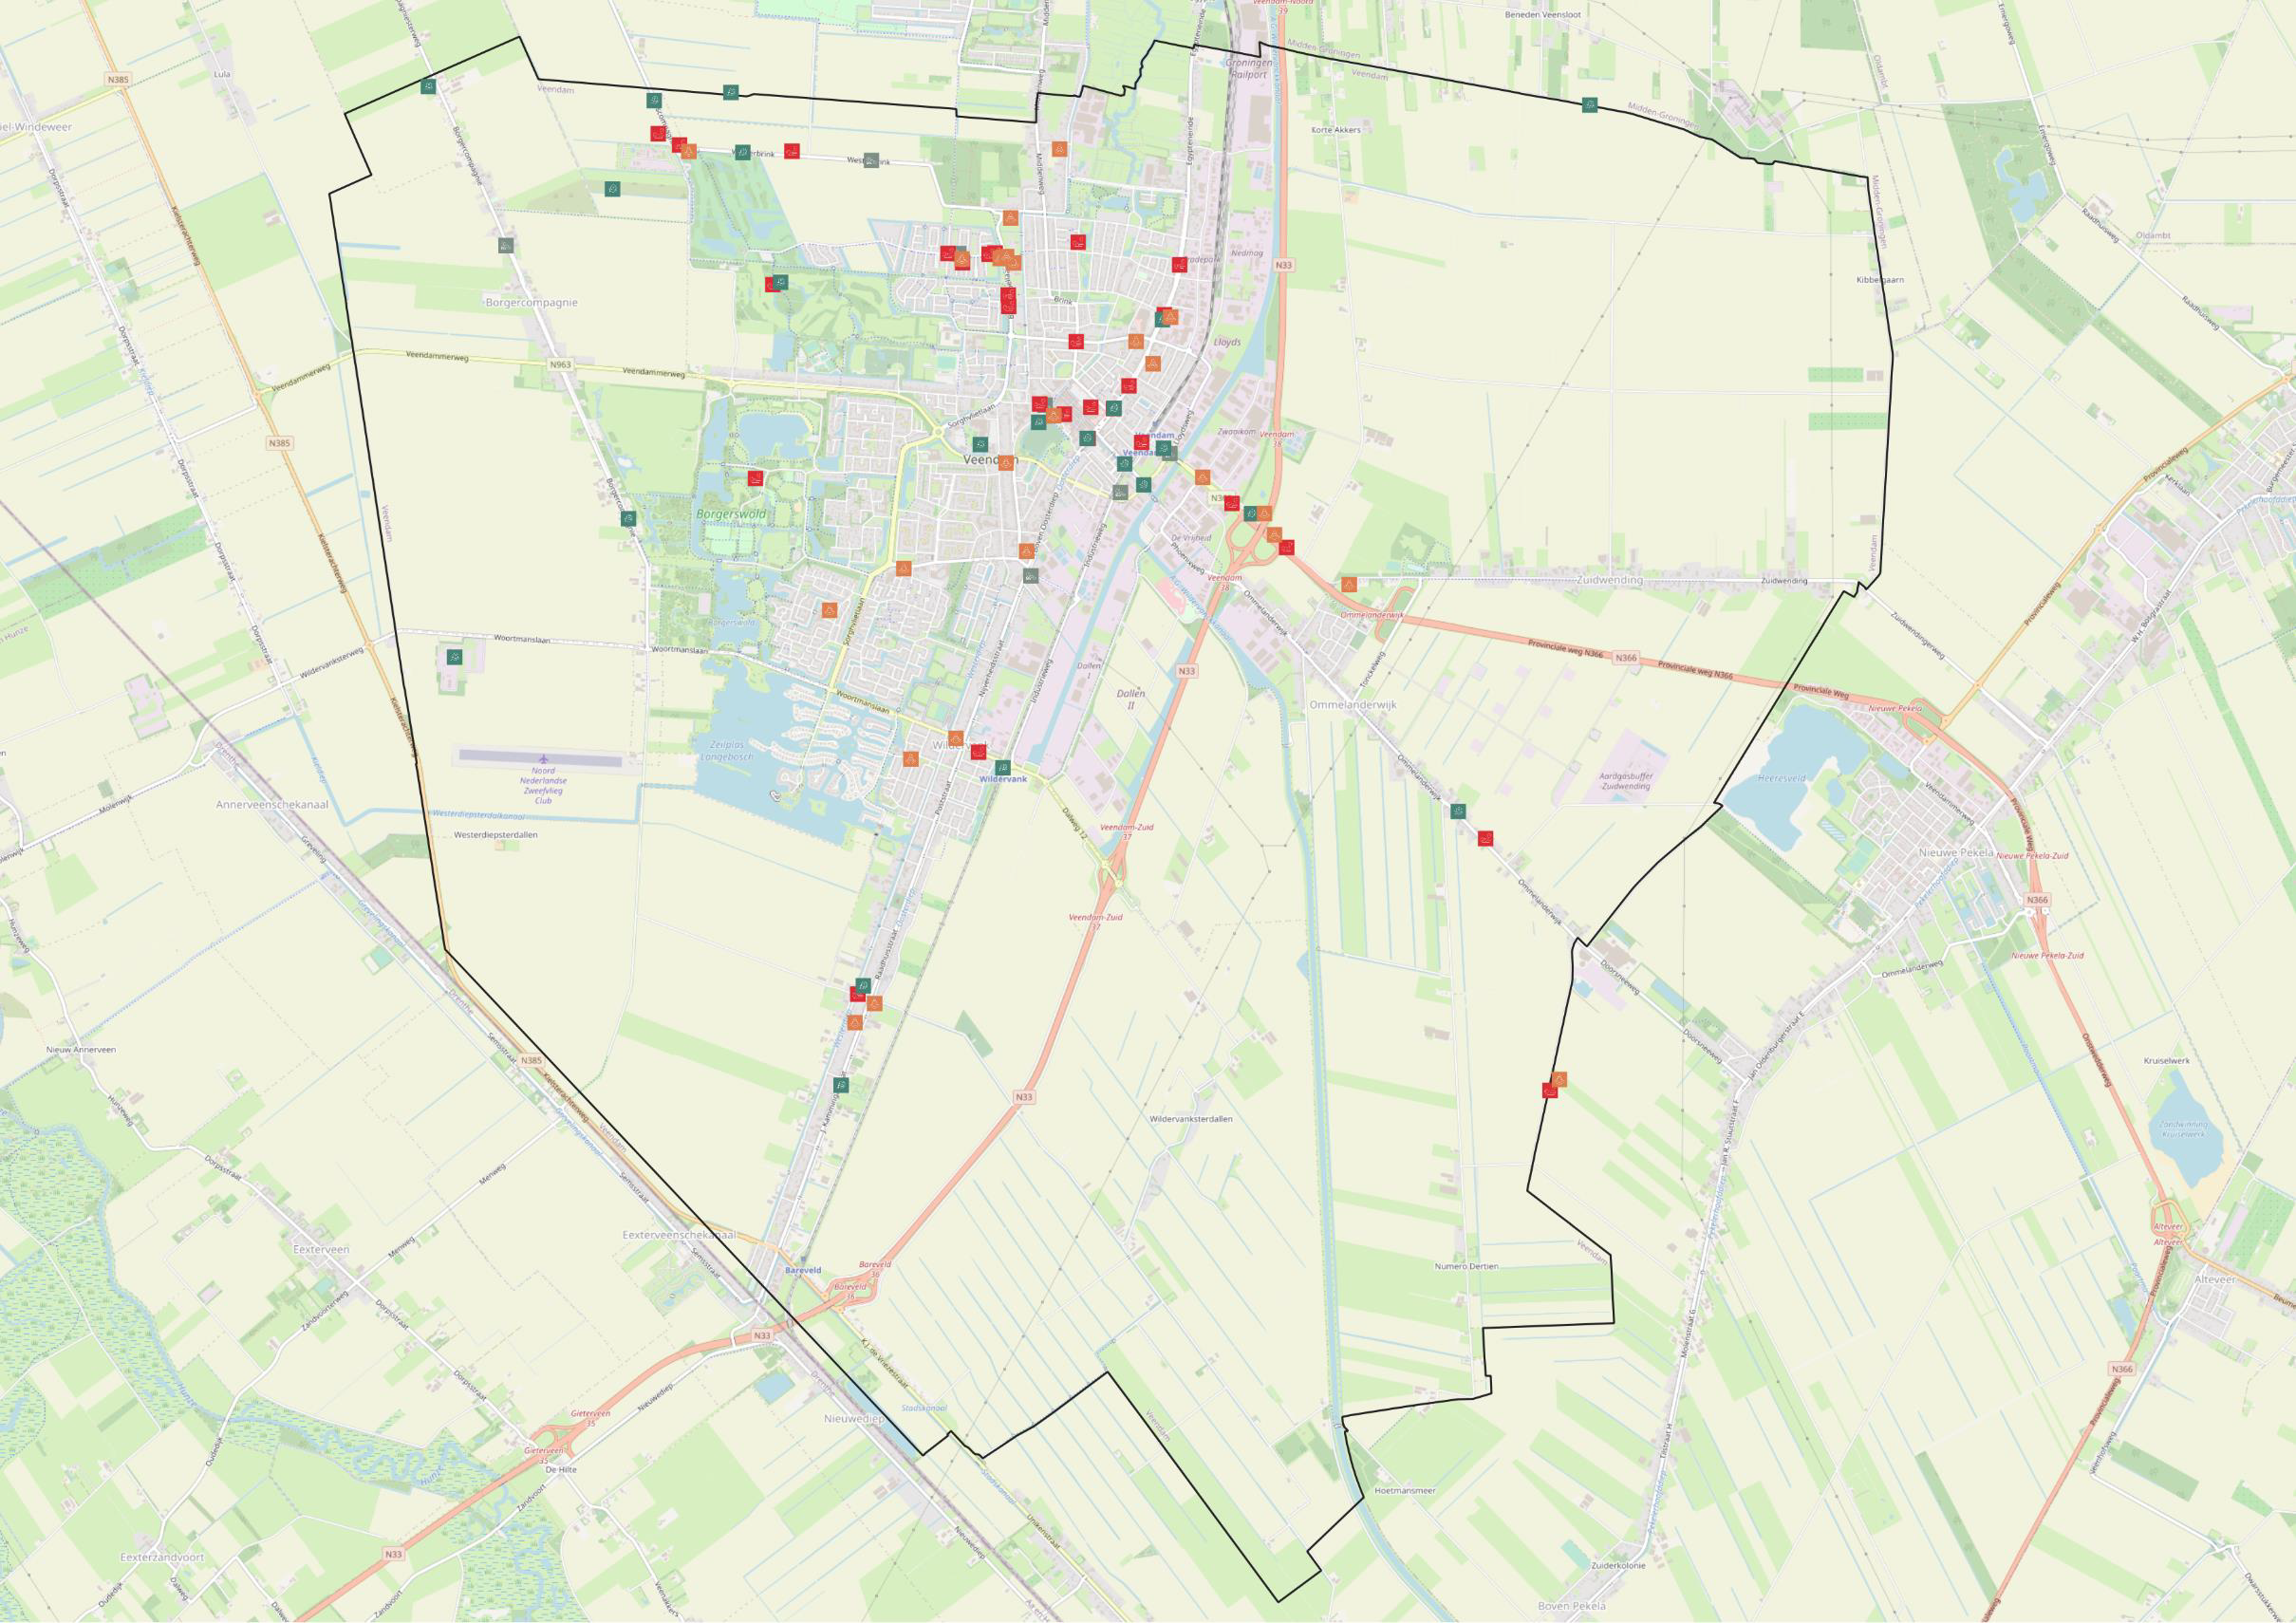 Inbreng Maptionnaire Kaartmateriaal: Gemarkeerde locaties per thema.